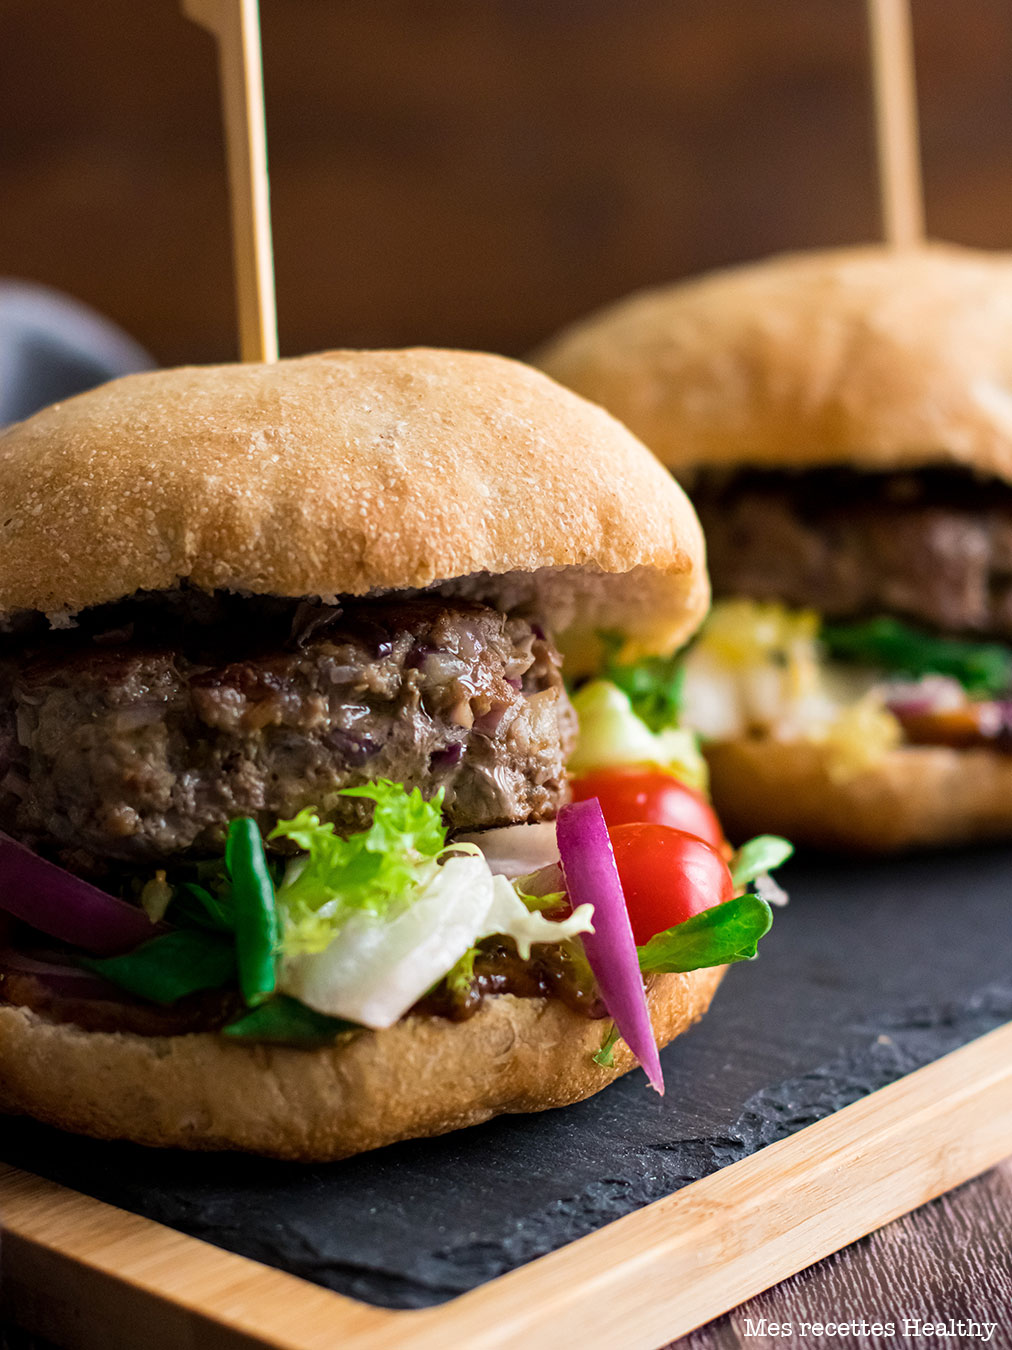 recette healthy-Burger maison cuit au barbecue -steak-plancha